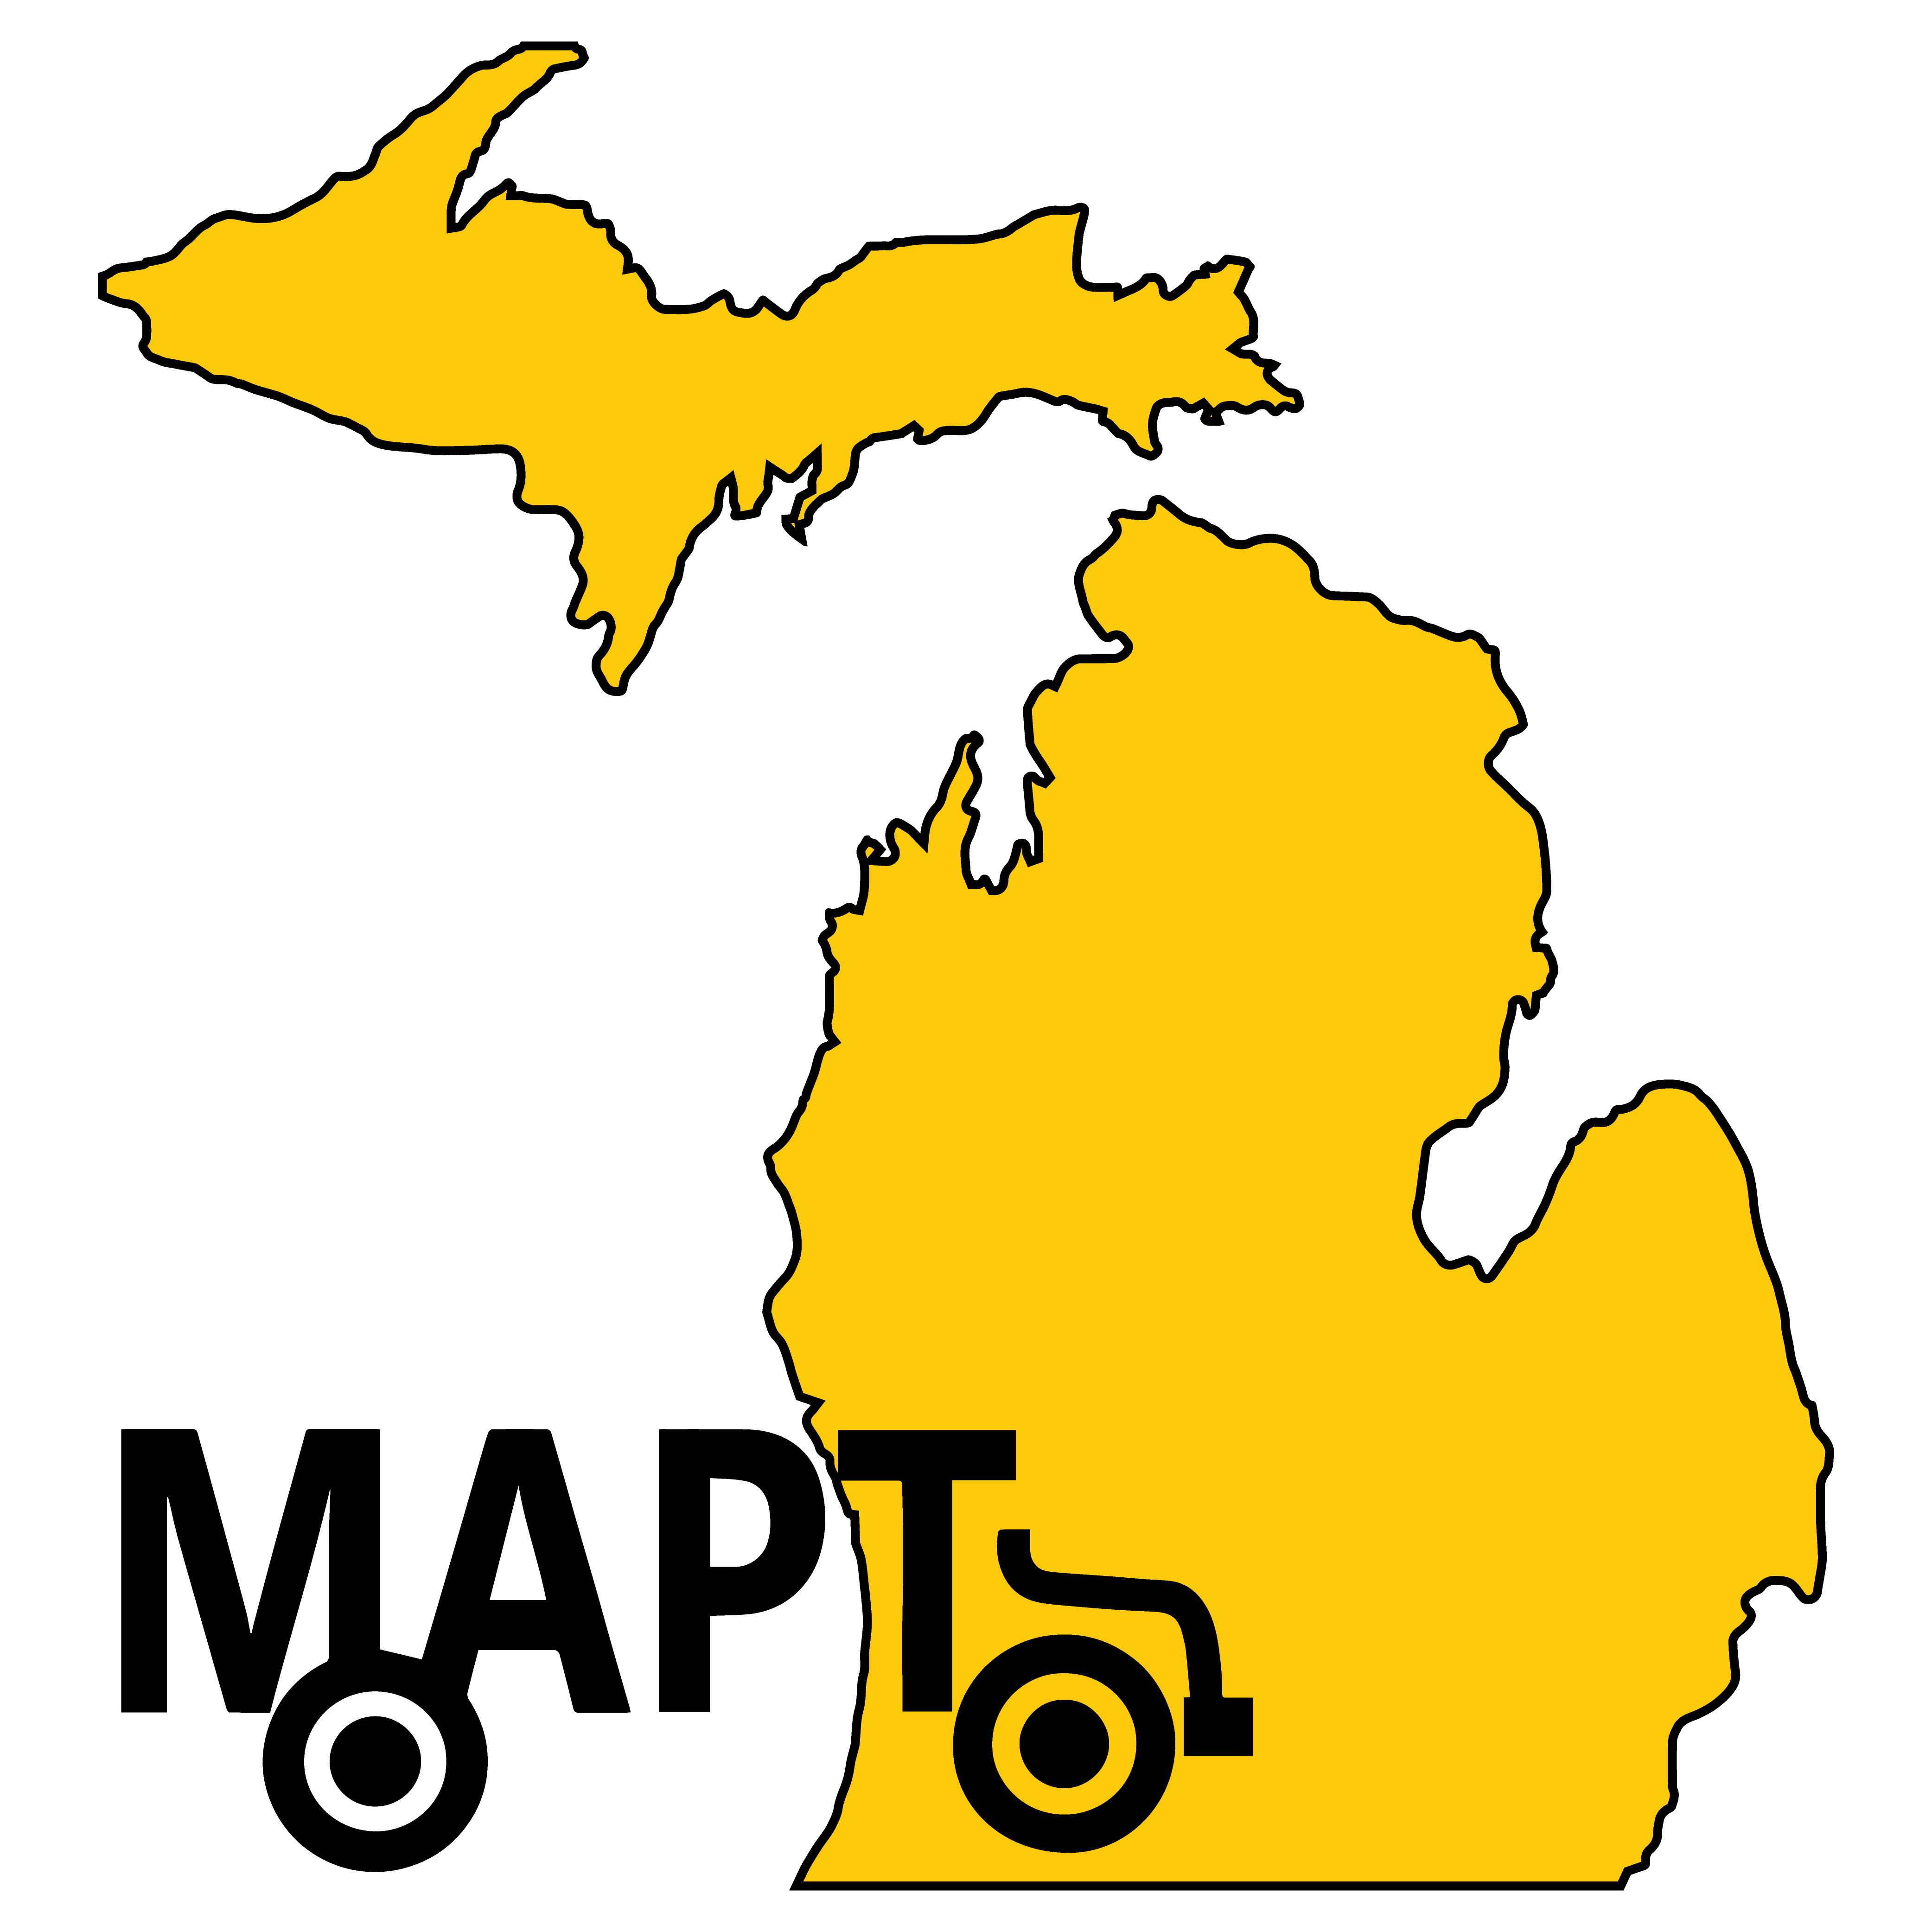 Michigan Association for Pupil Transportation